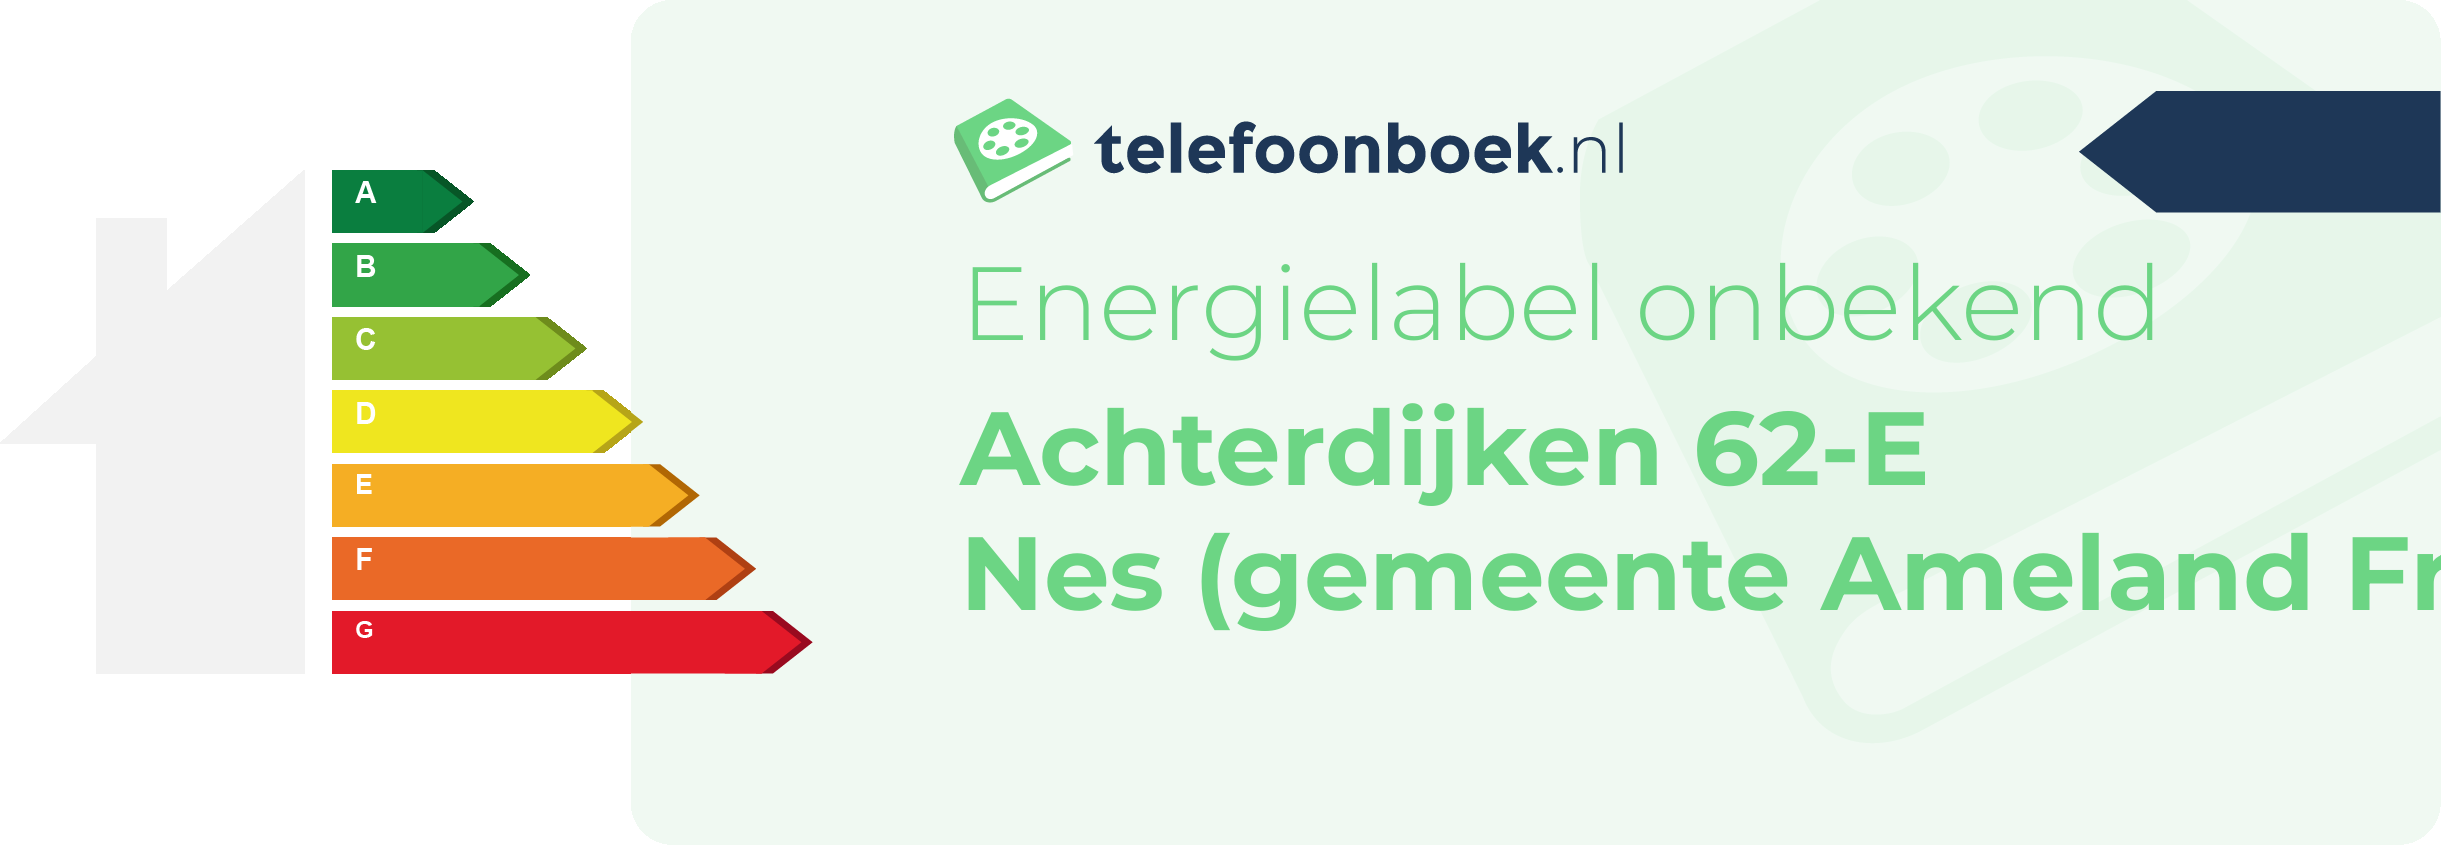 Energielabel Achterdijken 62-E Nes (gemeente Ameland Friesland)